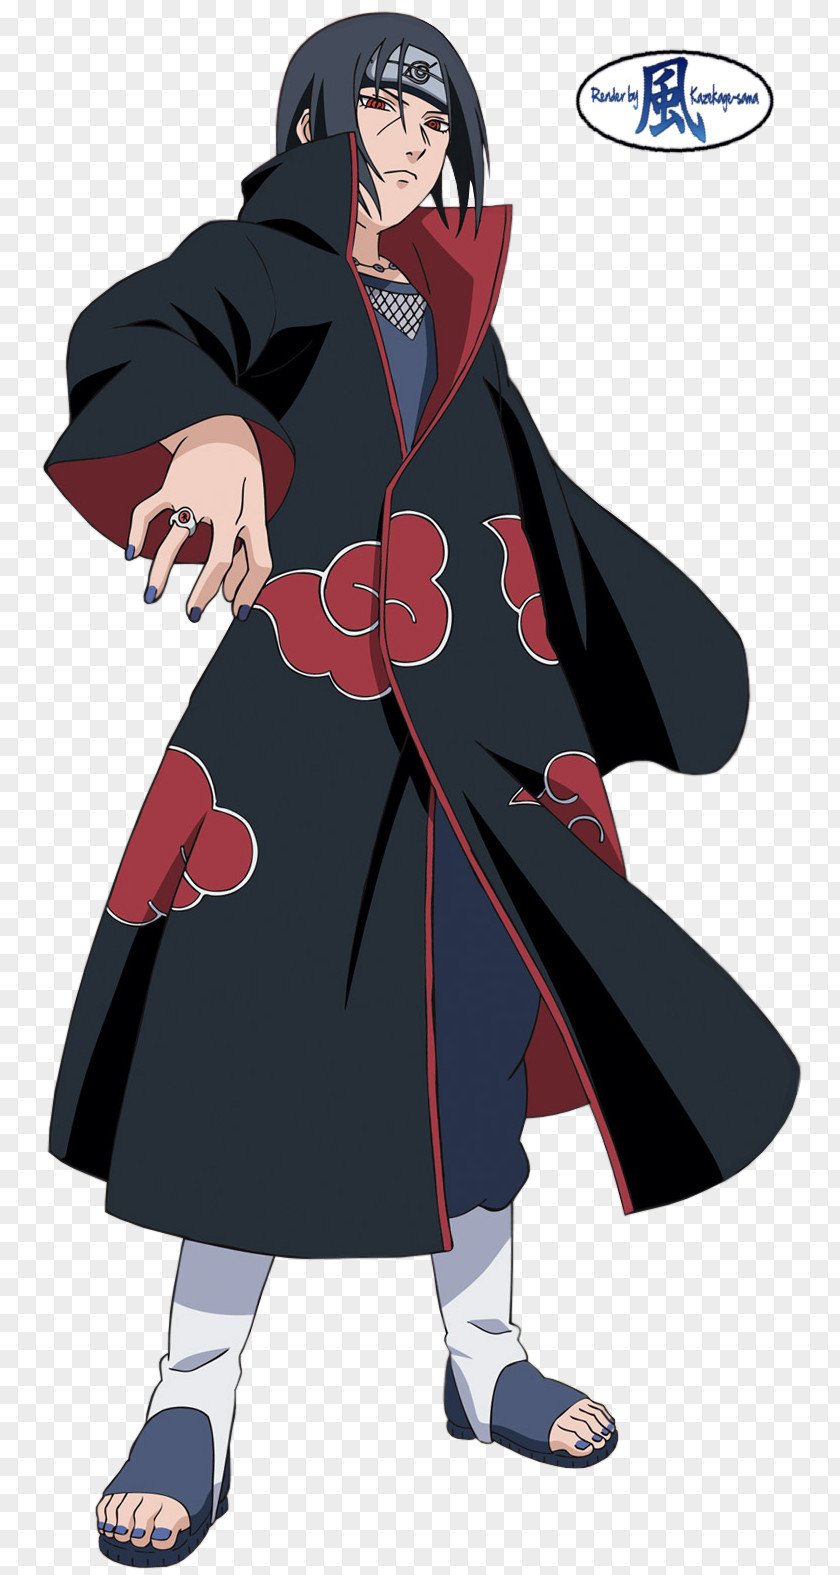 Naruto Itachi Uchiha Sasuke Kakashi Hatake Obito Shippuden: Ultimate Ninja Storm 3 PNG